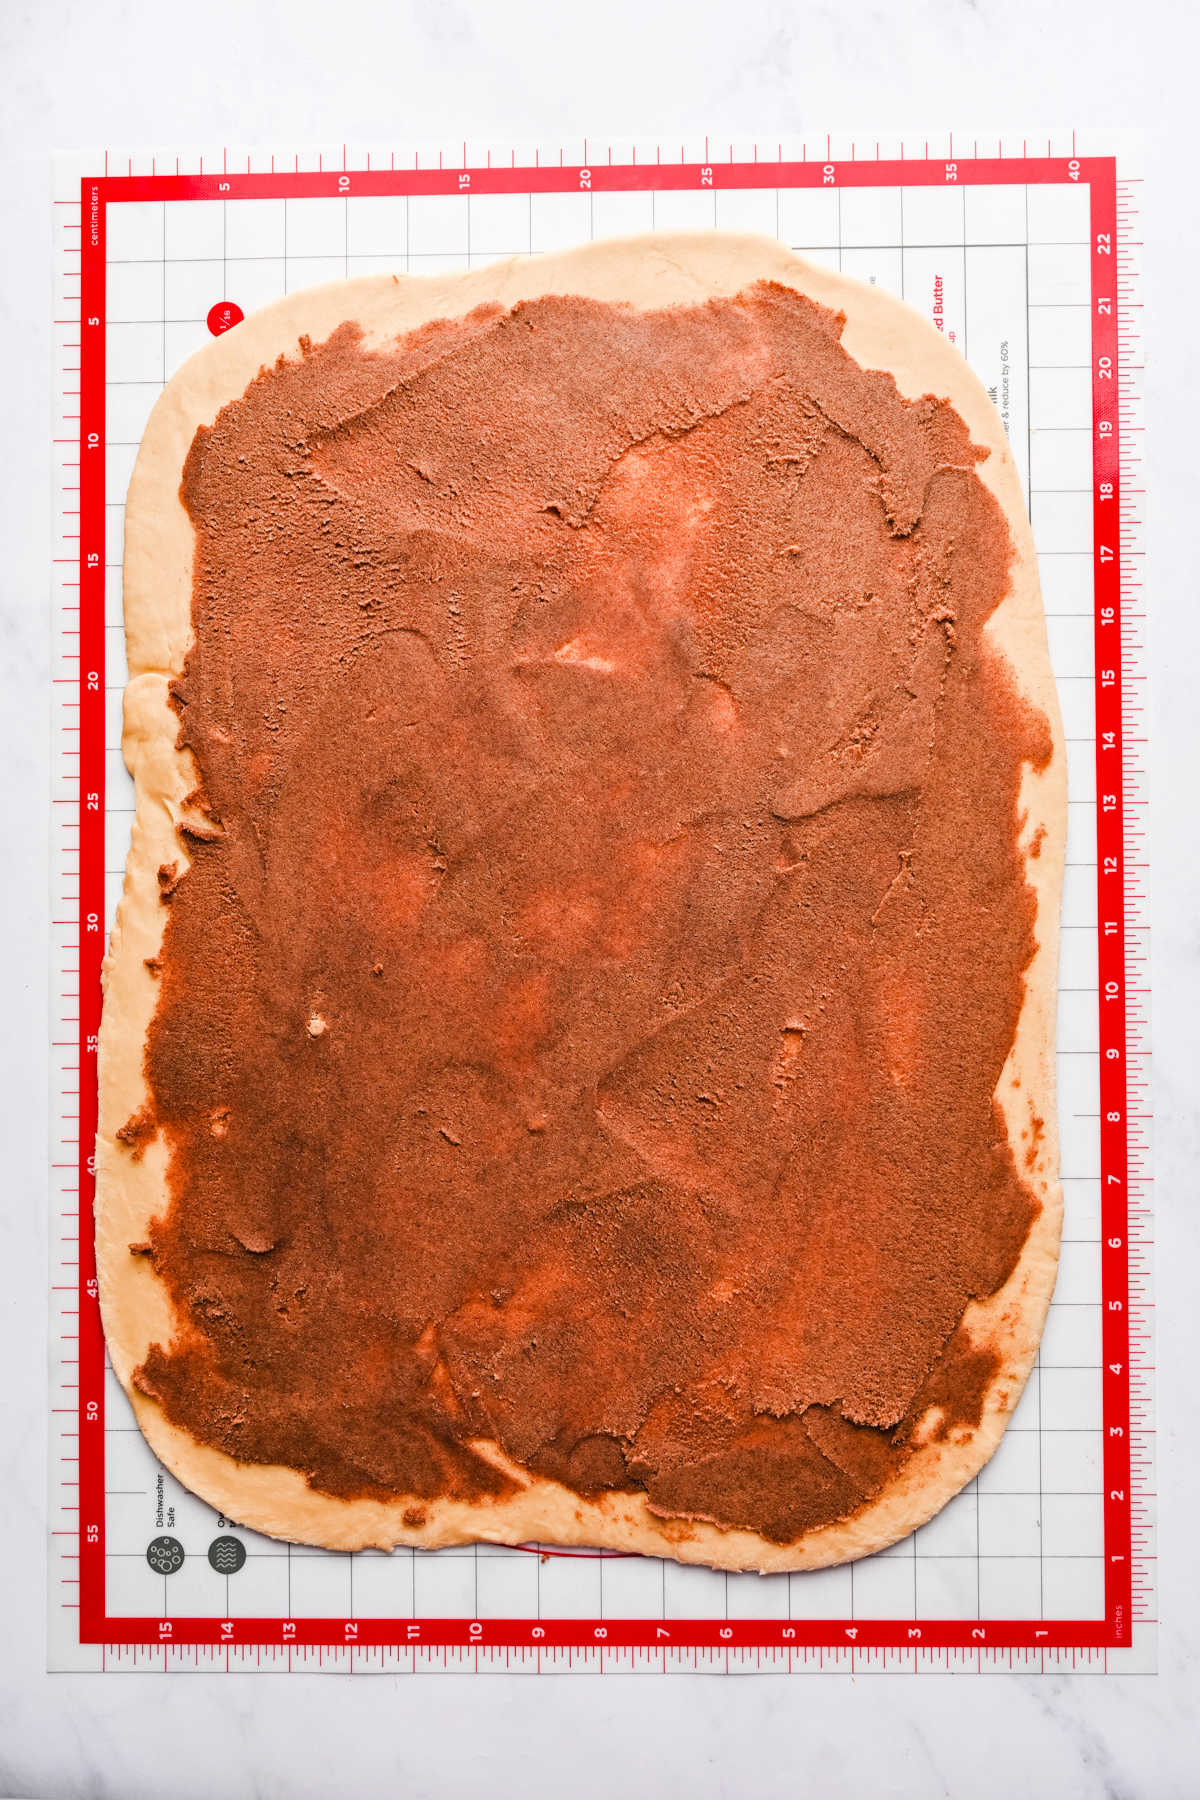 Cinnamon roll filling spread over dough. 